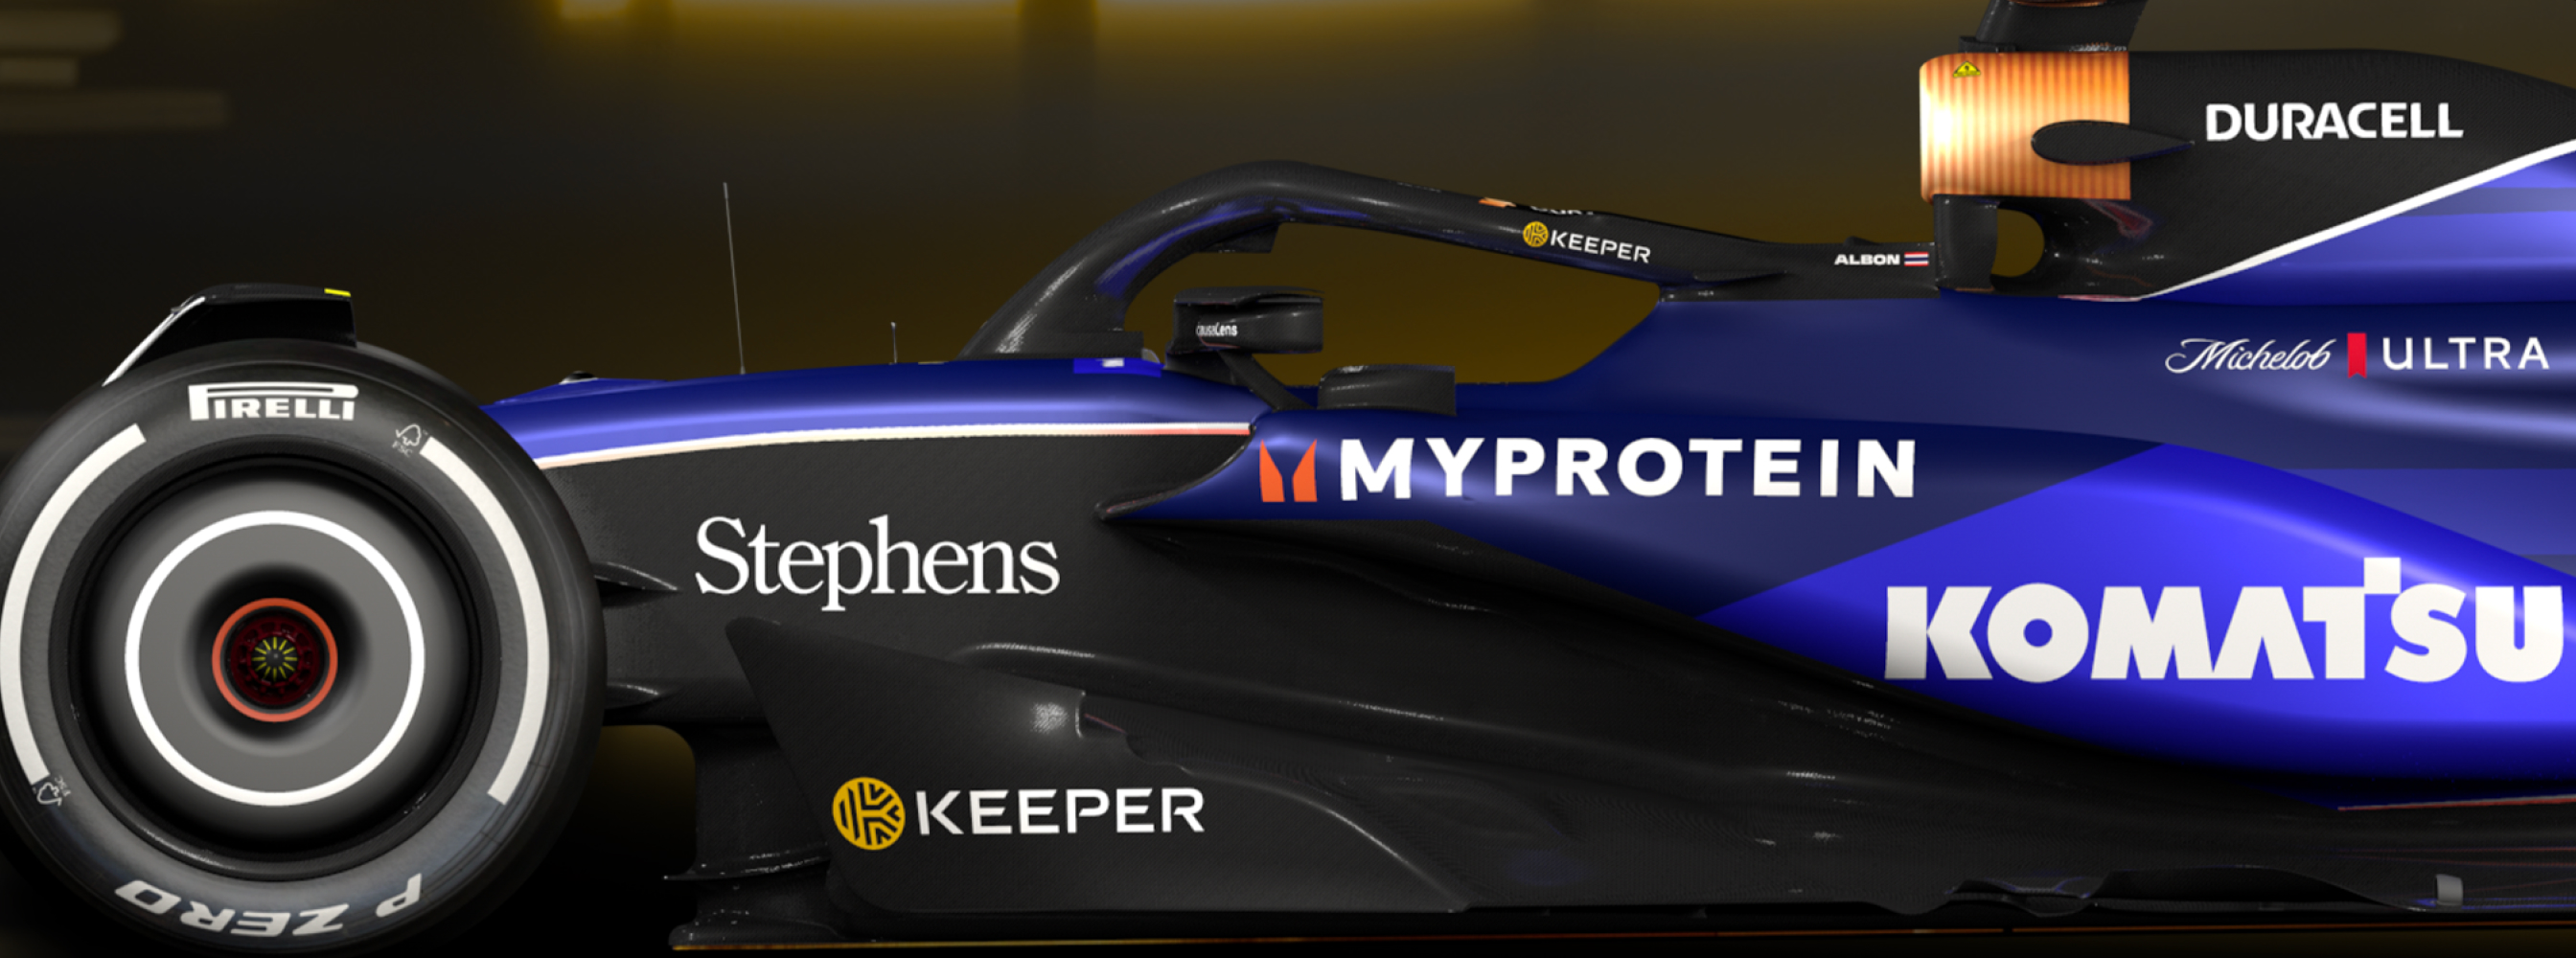 Keeper x Williams Racing - acelerando a inovação